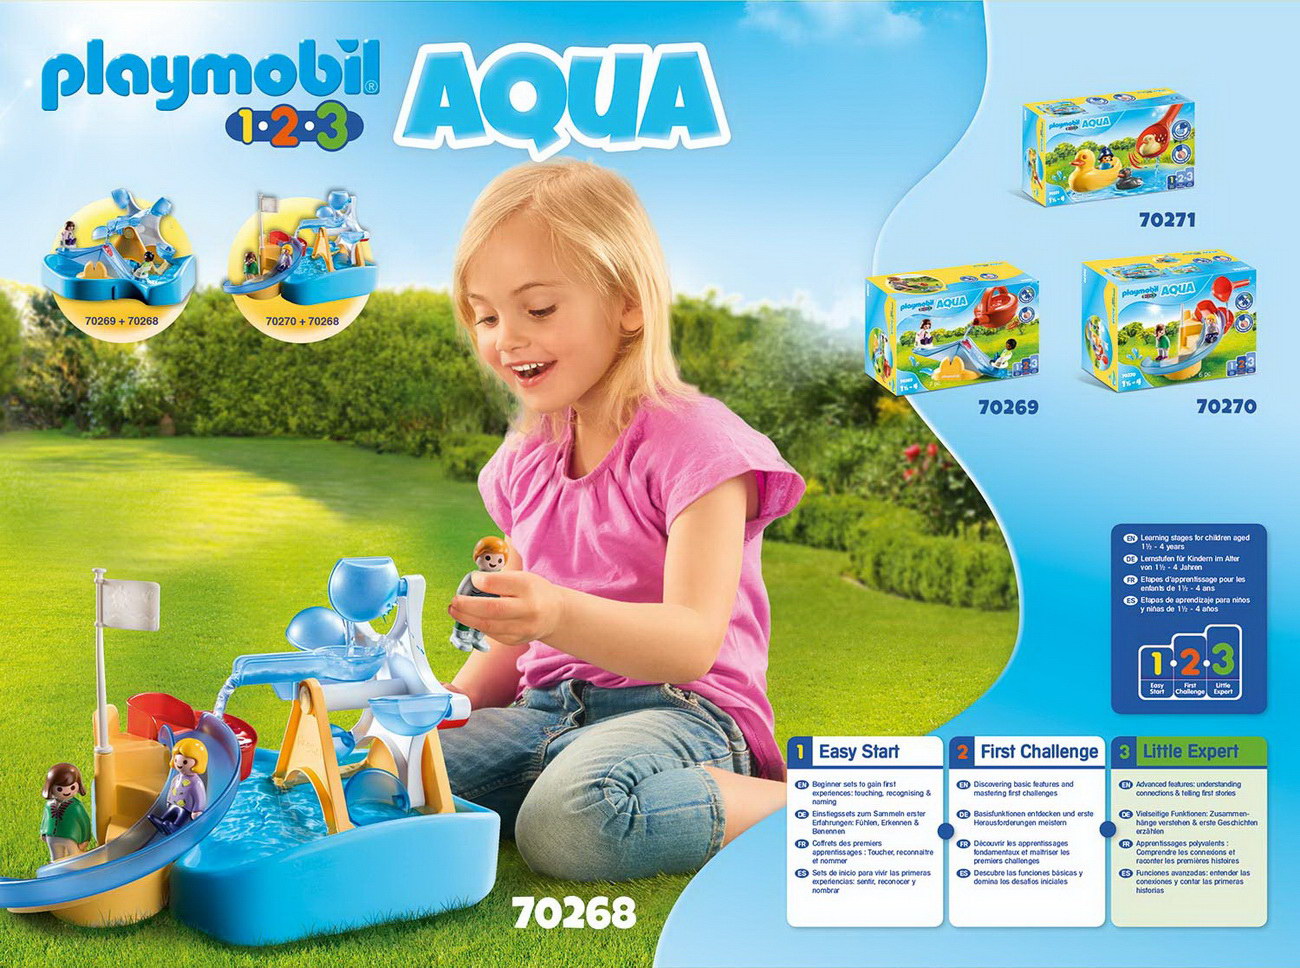 Playmobil 70268 - Wasserrad mit Karussell - 1.2.3 / Aqua